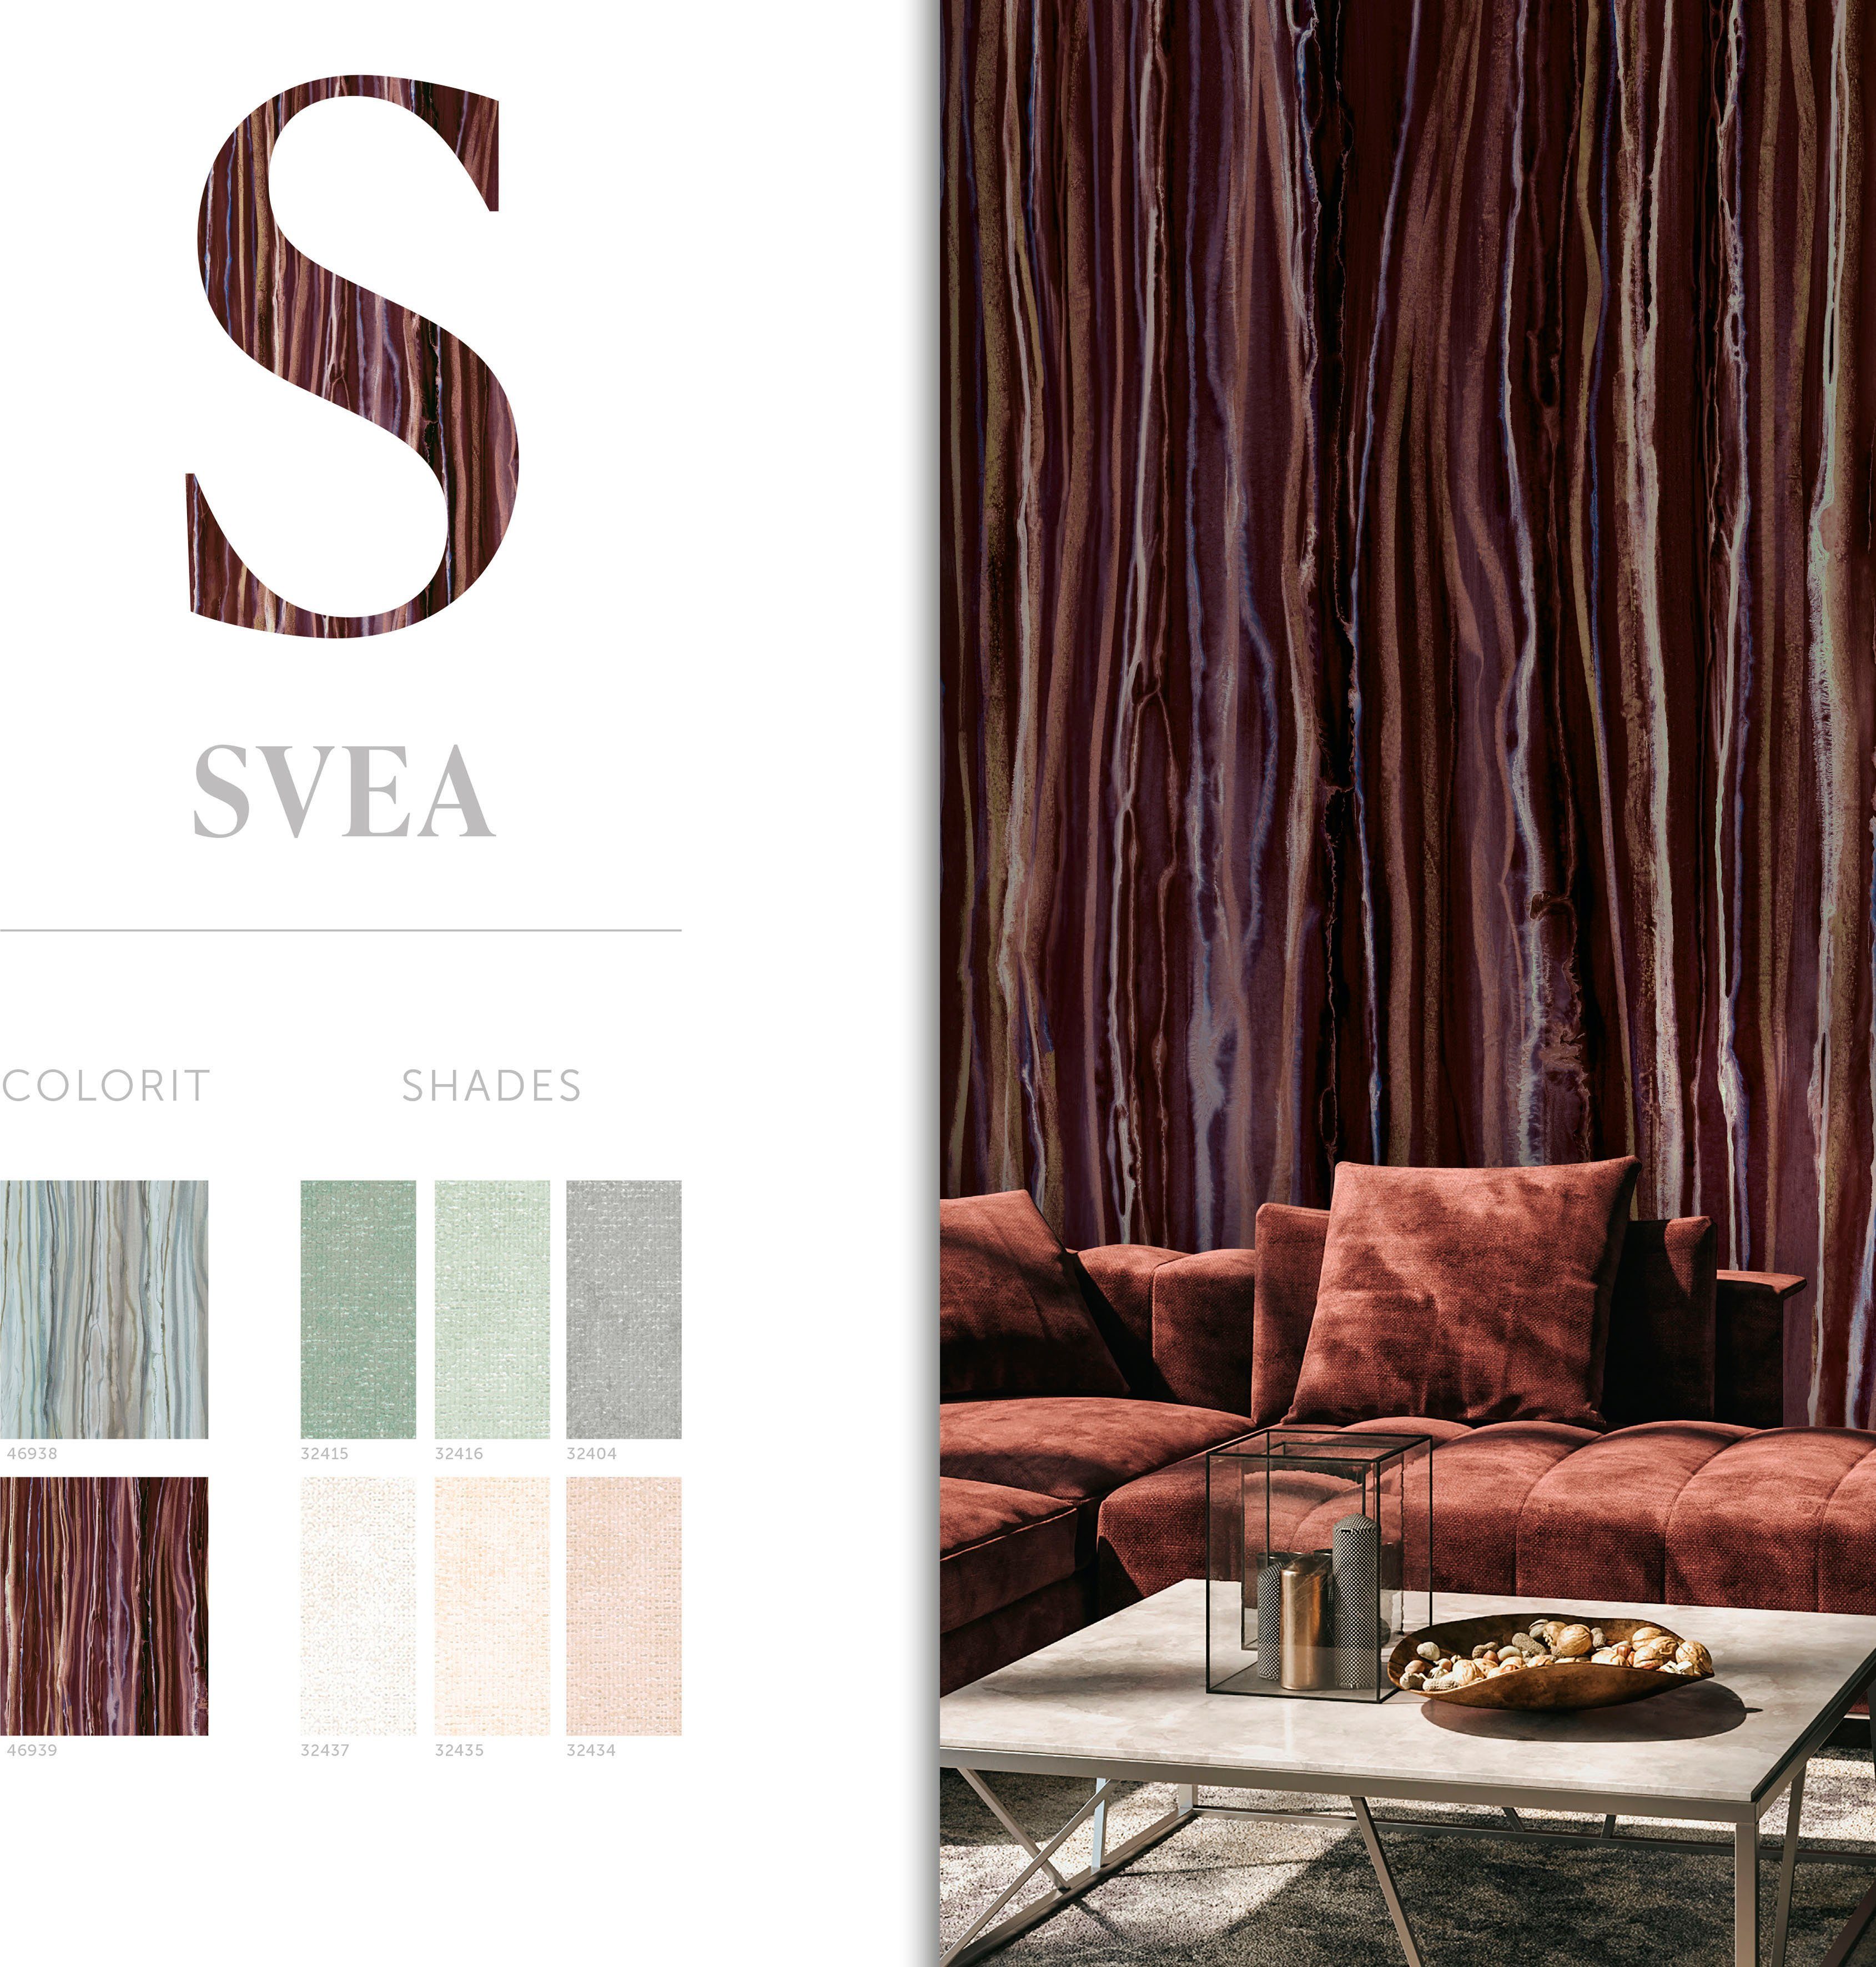 Schlafzimmer Svea, für Küche matt, glatt, braun/lila moderne Marburg Wohnzimmer Vliestapete Fototapete